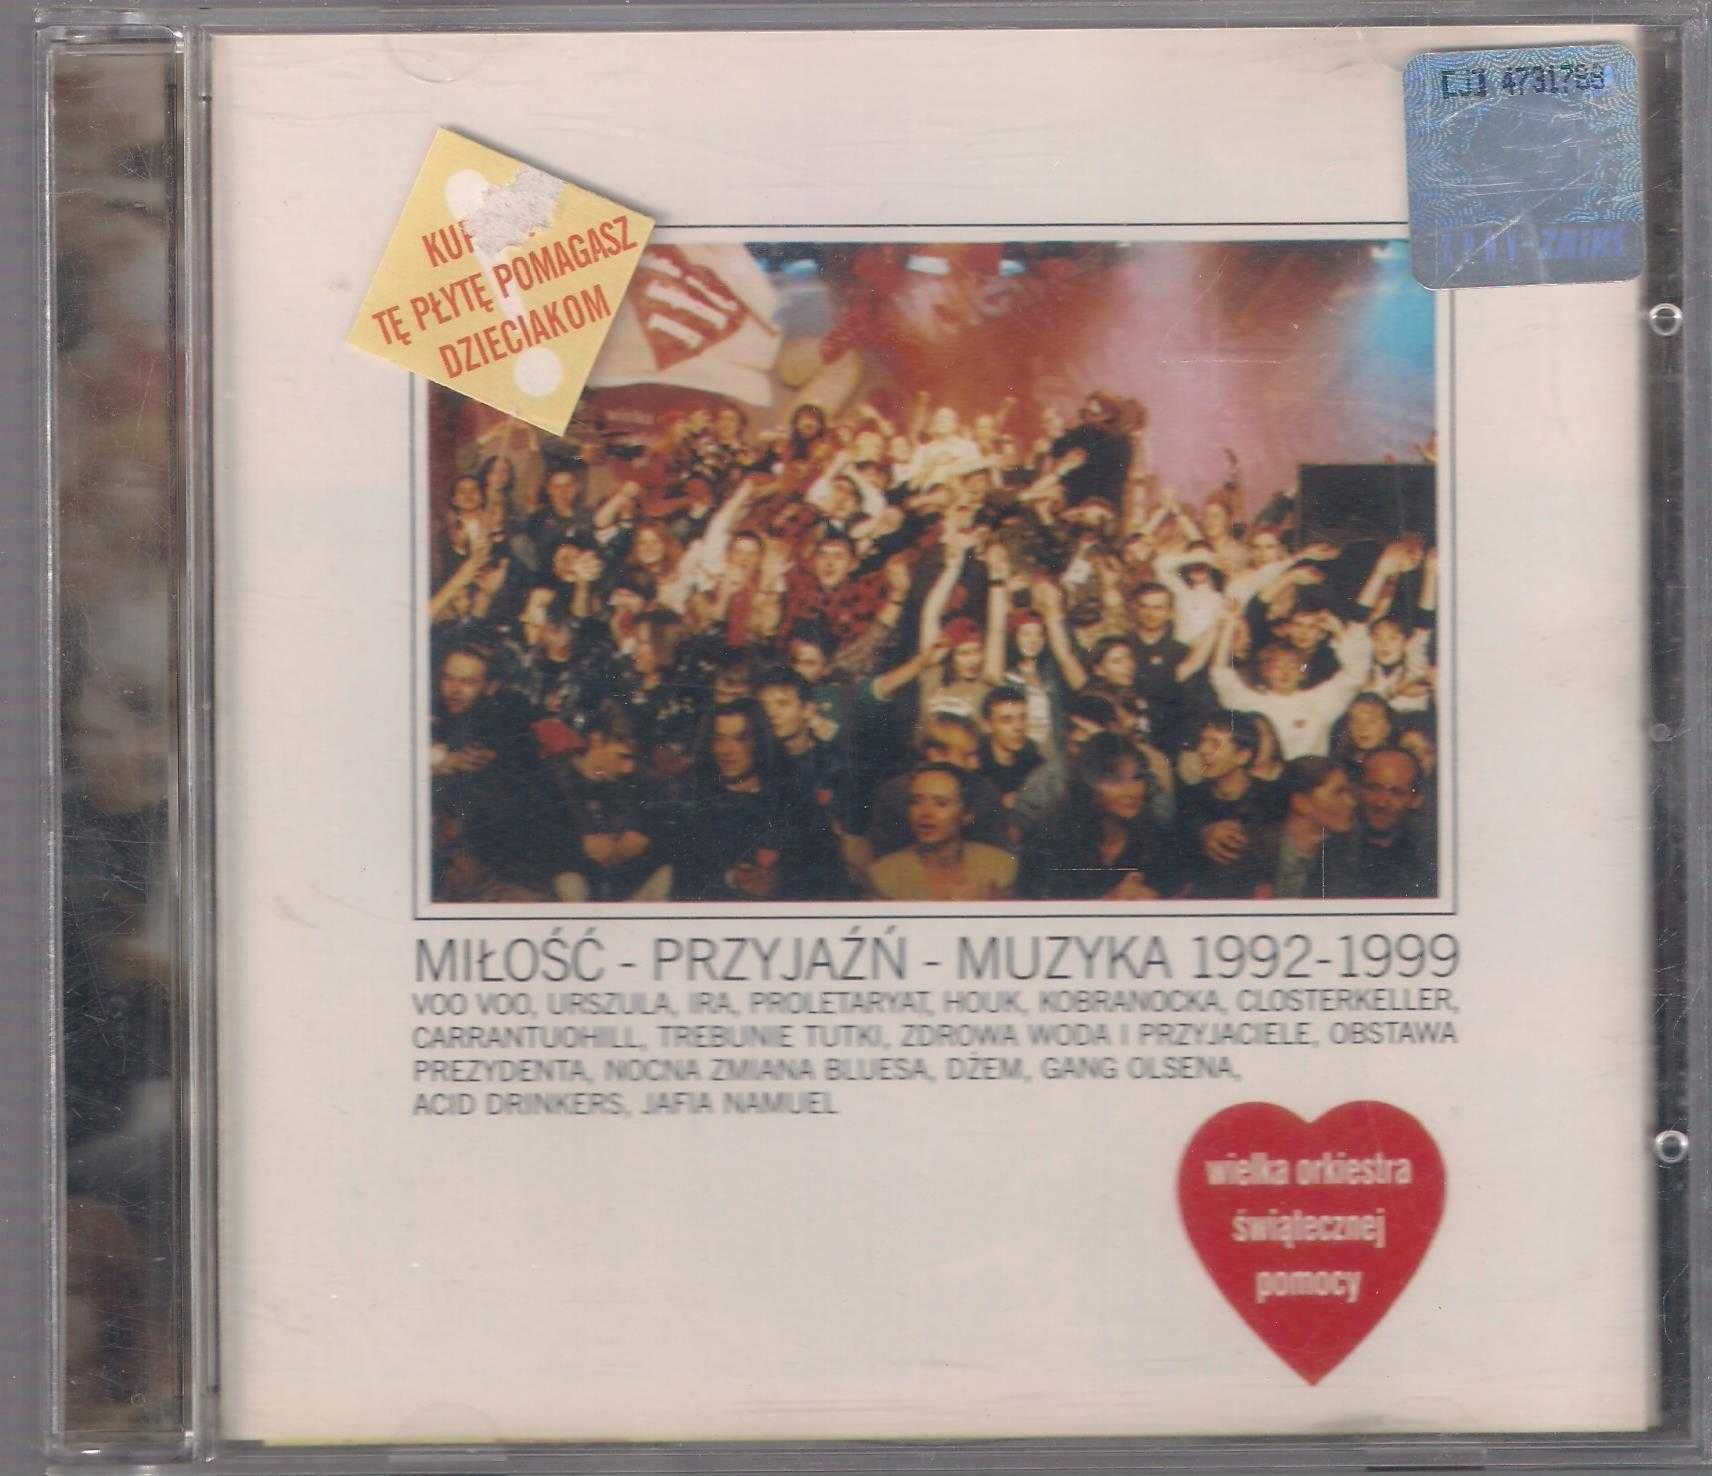 WOŚP 1992 - 1999 Miłośc Przyjażń Muzyka CD Jerzy Owsiak Ira Dżem Houk